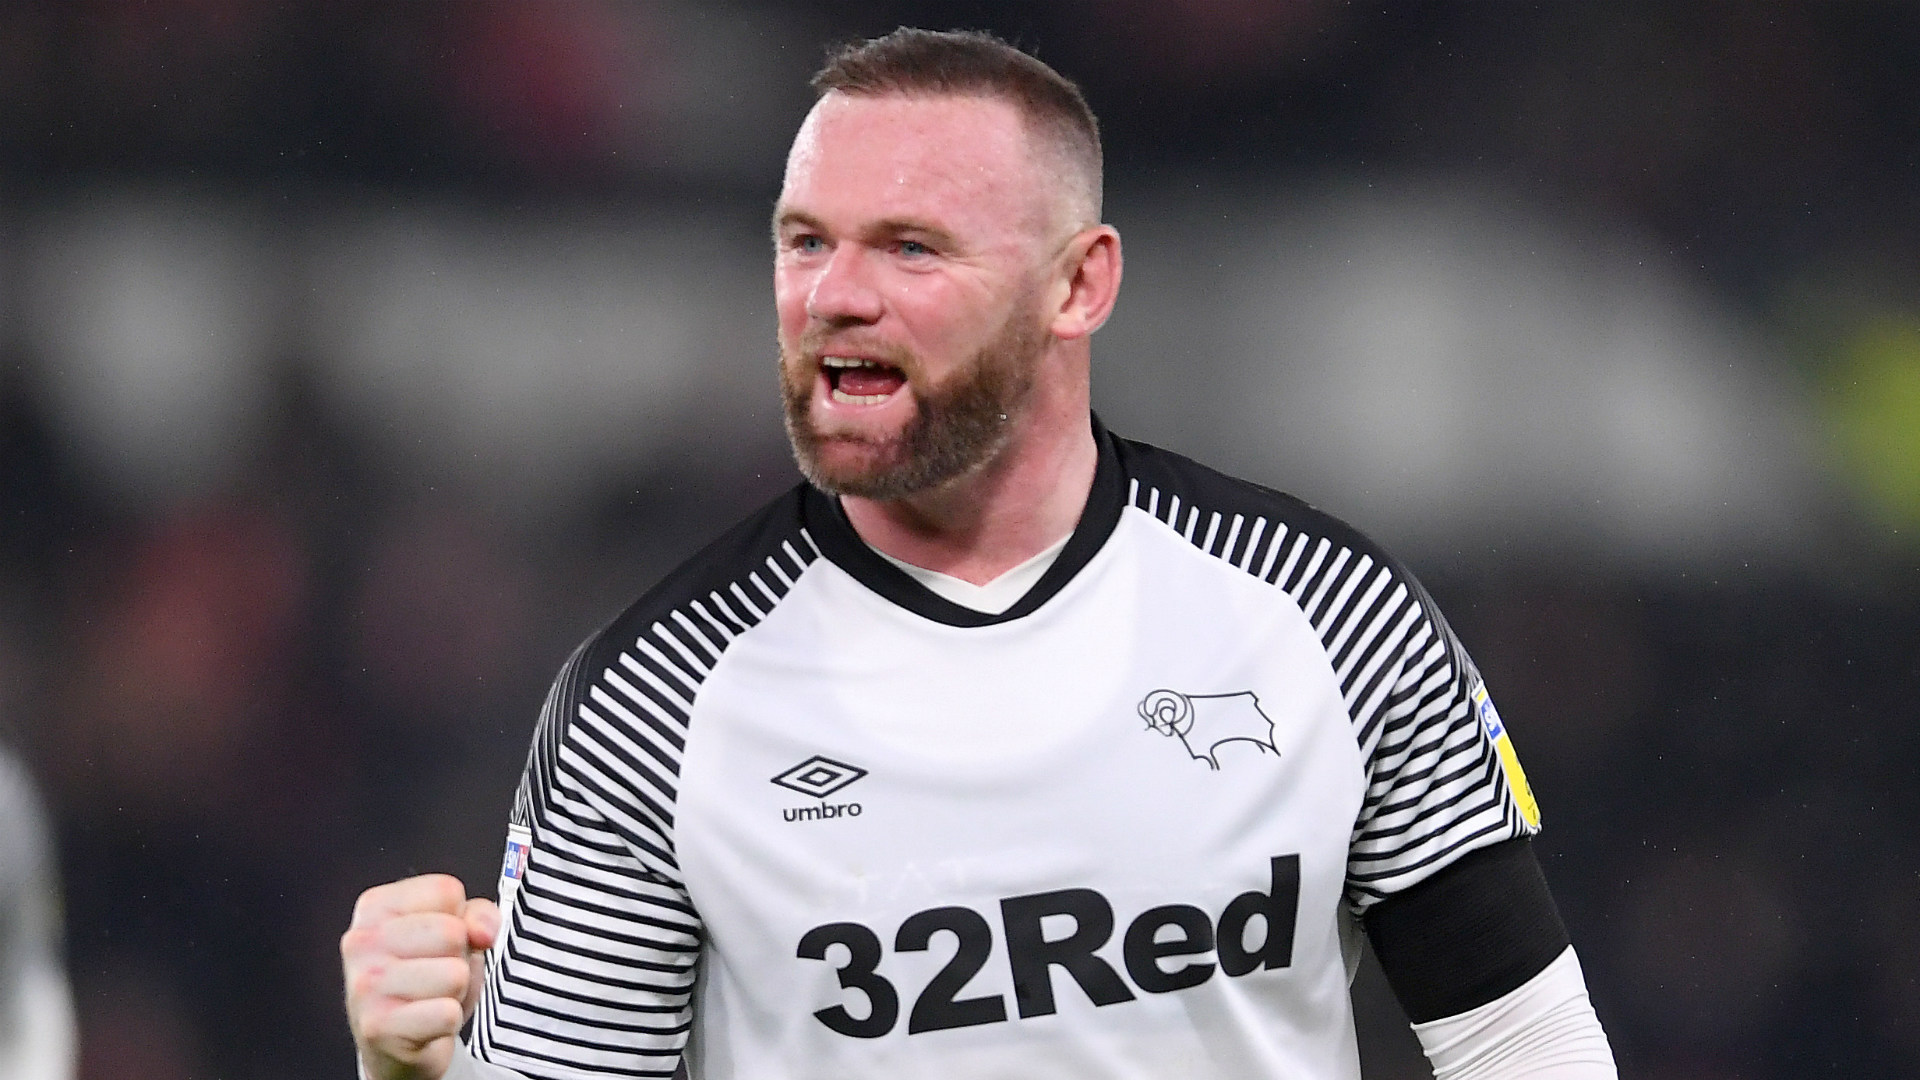 HLV trưởng bị sa thải, Rooney dẫn dắt Derby County | Goal.com